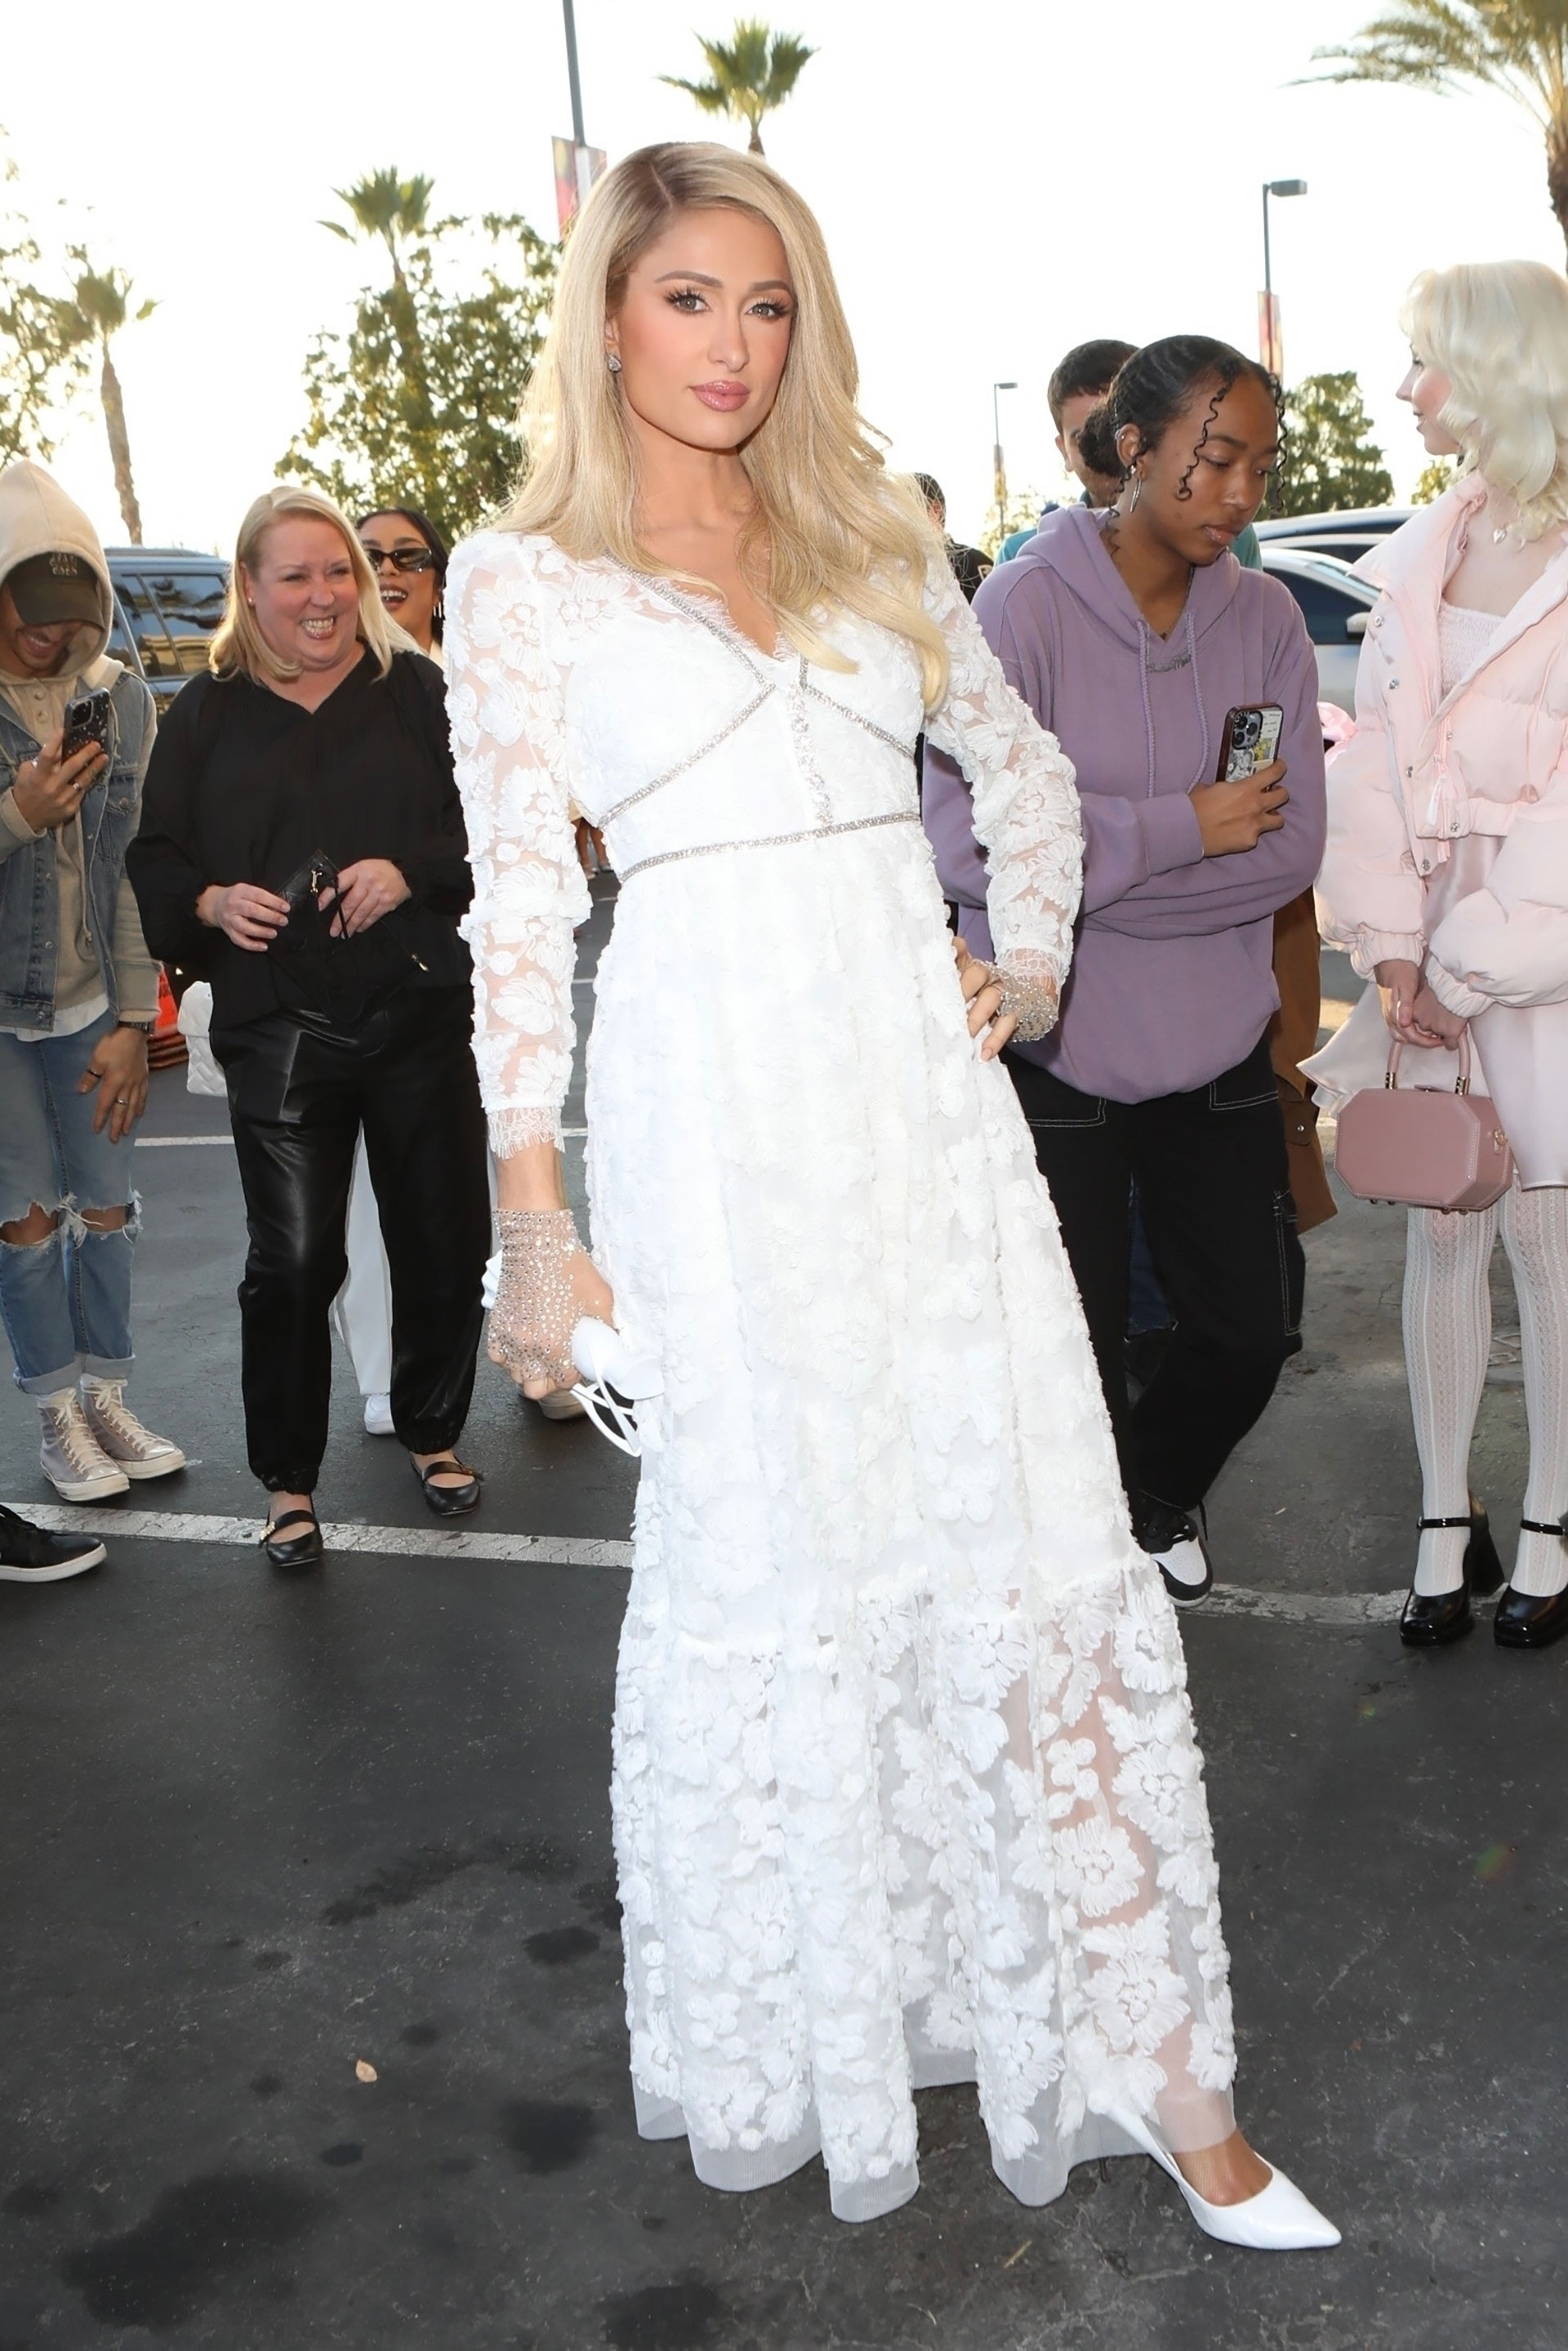 Paris Hilton lanzó su fragancia número 29 "Love Rush", en una celebración que tuvo lugar en Nordstrom Rack, Riverside, California. Lució espléndida con un vestido blanco de encaje transparente y su icónica melena rubia bien acomodada hacia un lado. Combinó el atuendo con lentes de sol de marco blanco estilo gato